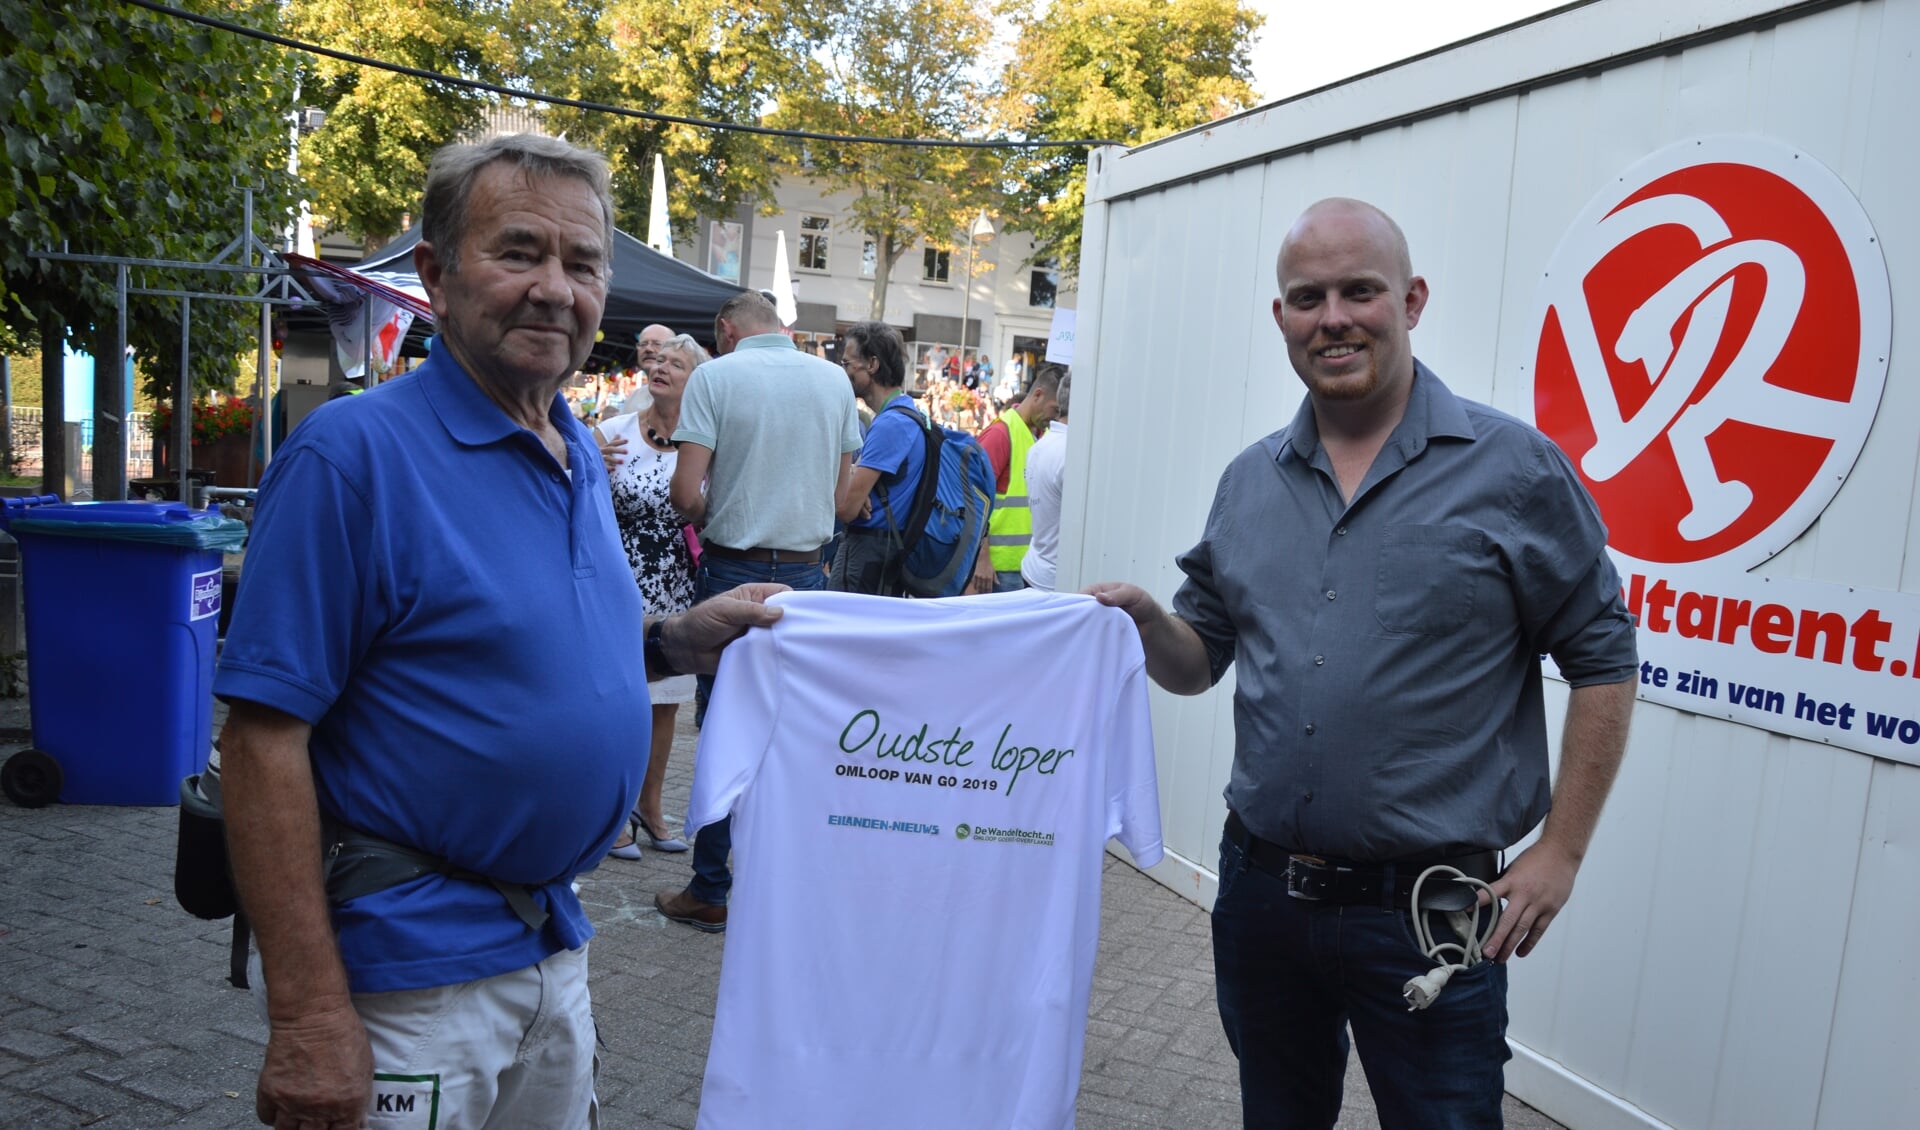 Leen Wielhouwer ontvangt het shirt voor de oudste loper van Harold Sturm van Eilanden-Nieuws.